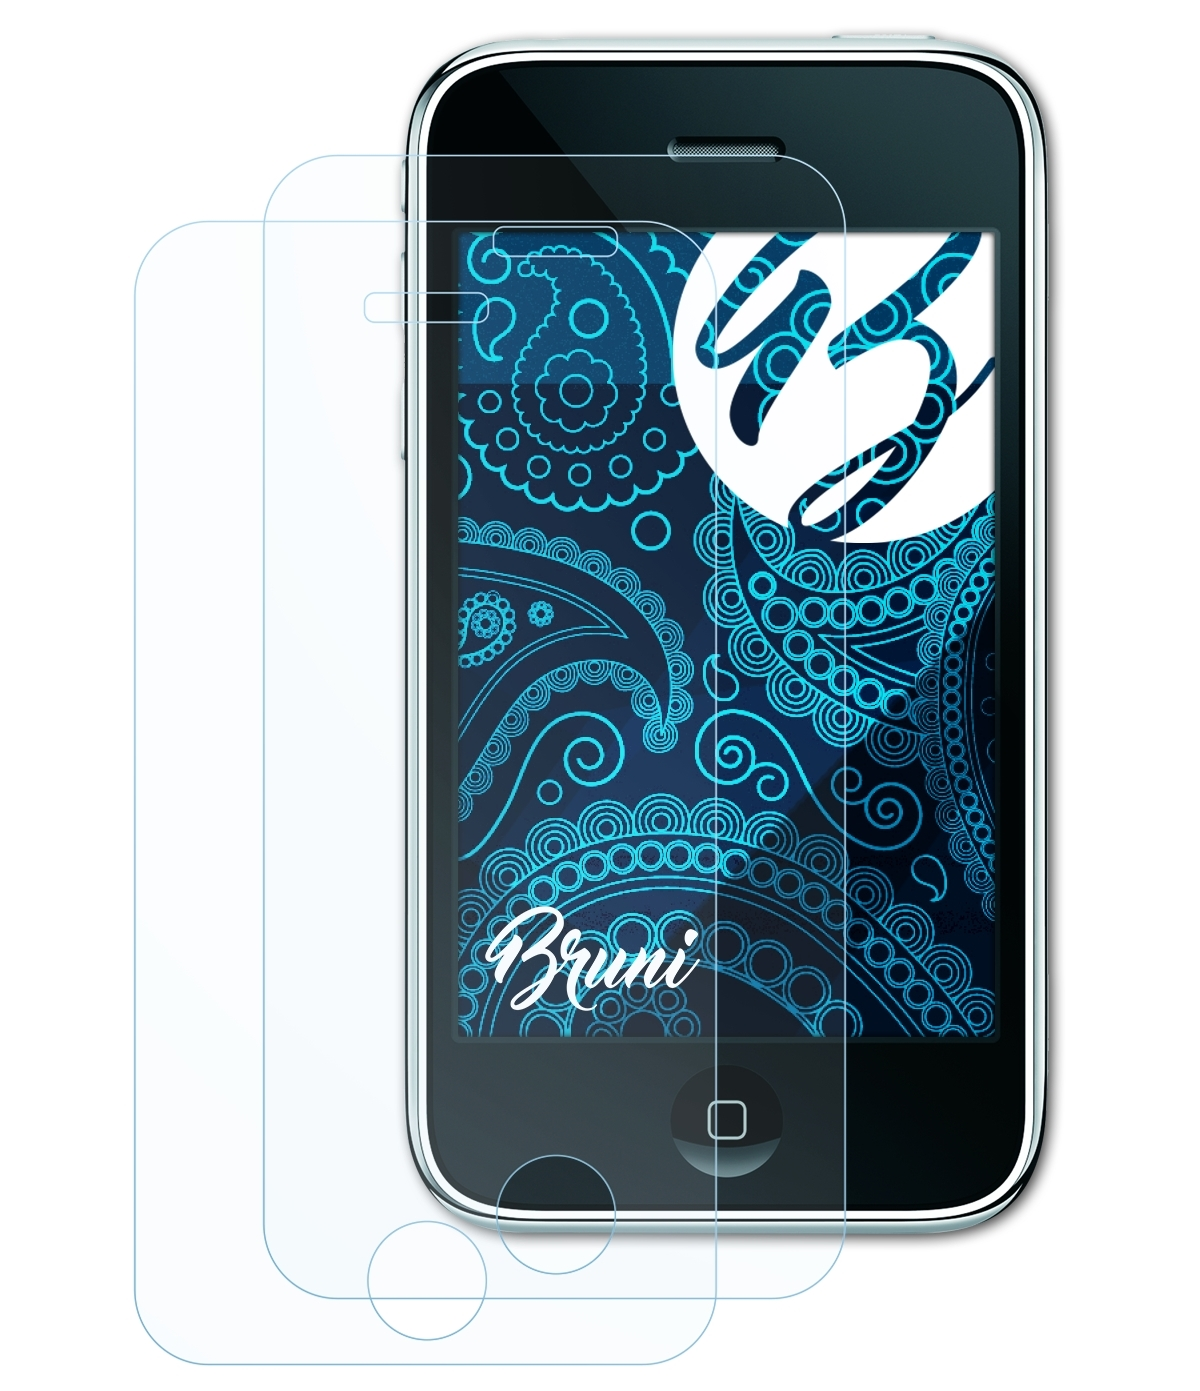 BRUNI 2x Basics-Clear iPhone 3G) Apple Schutzfolie(für